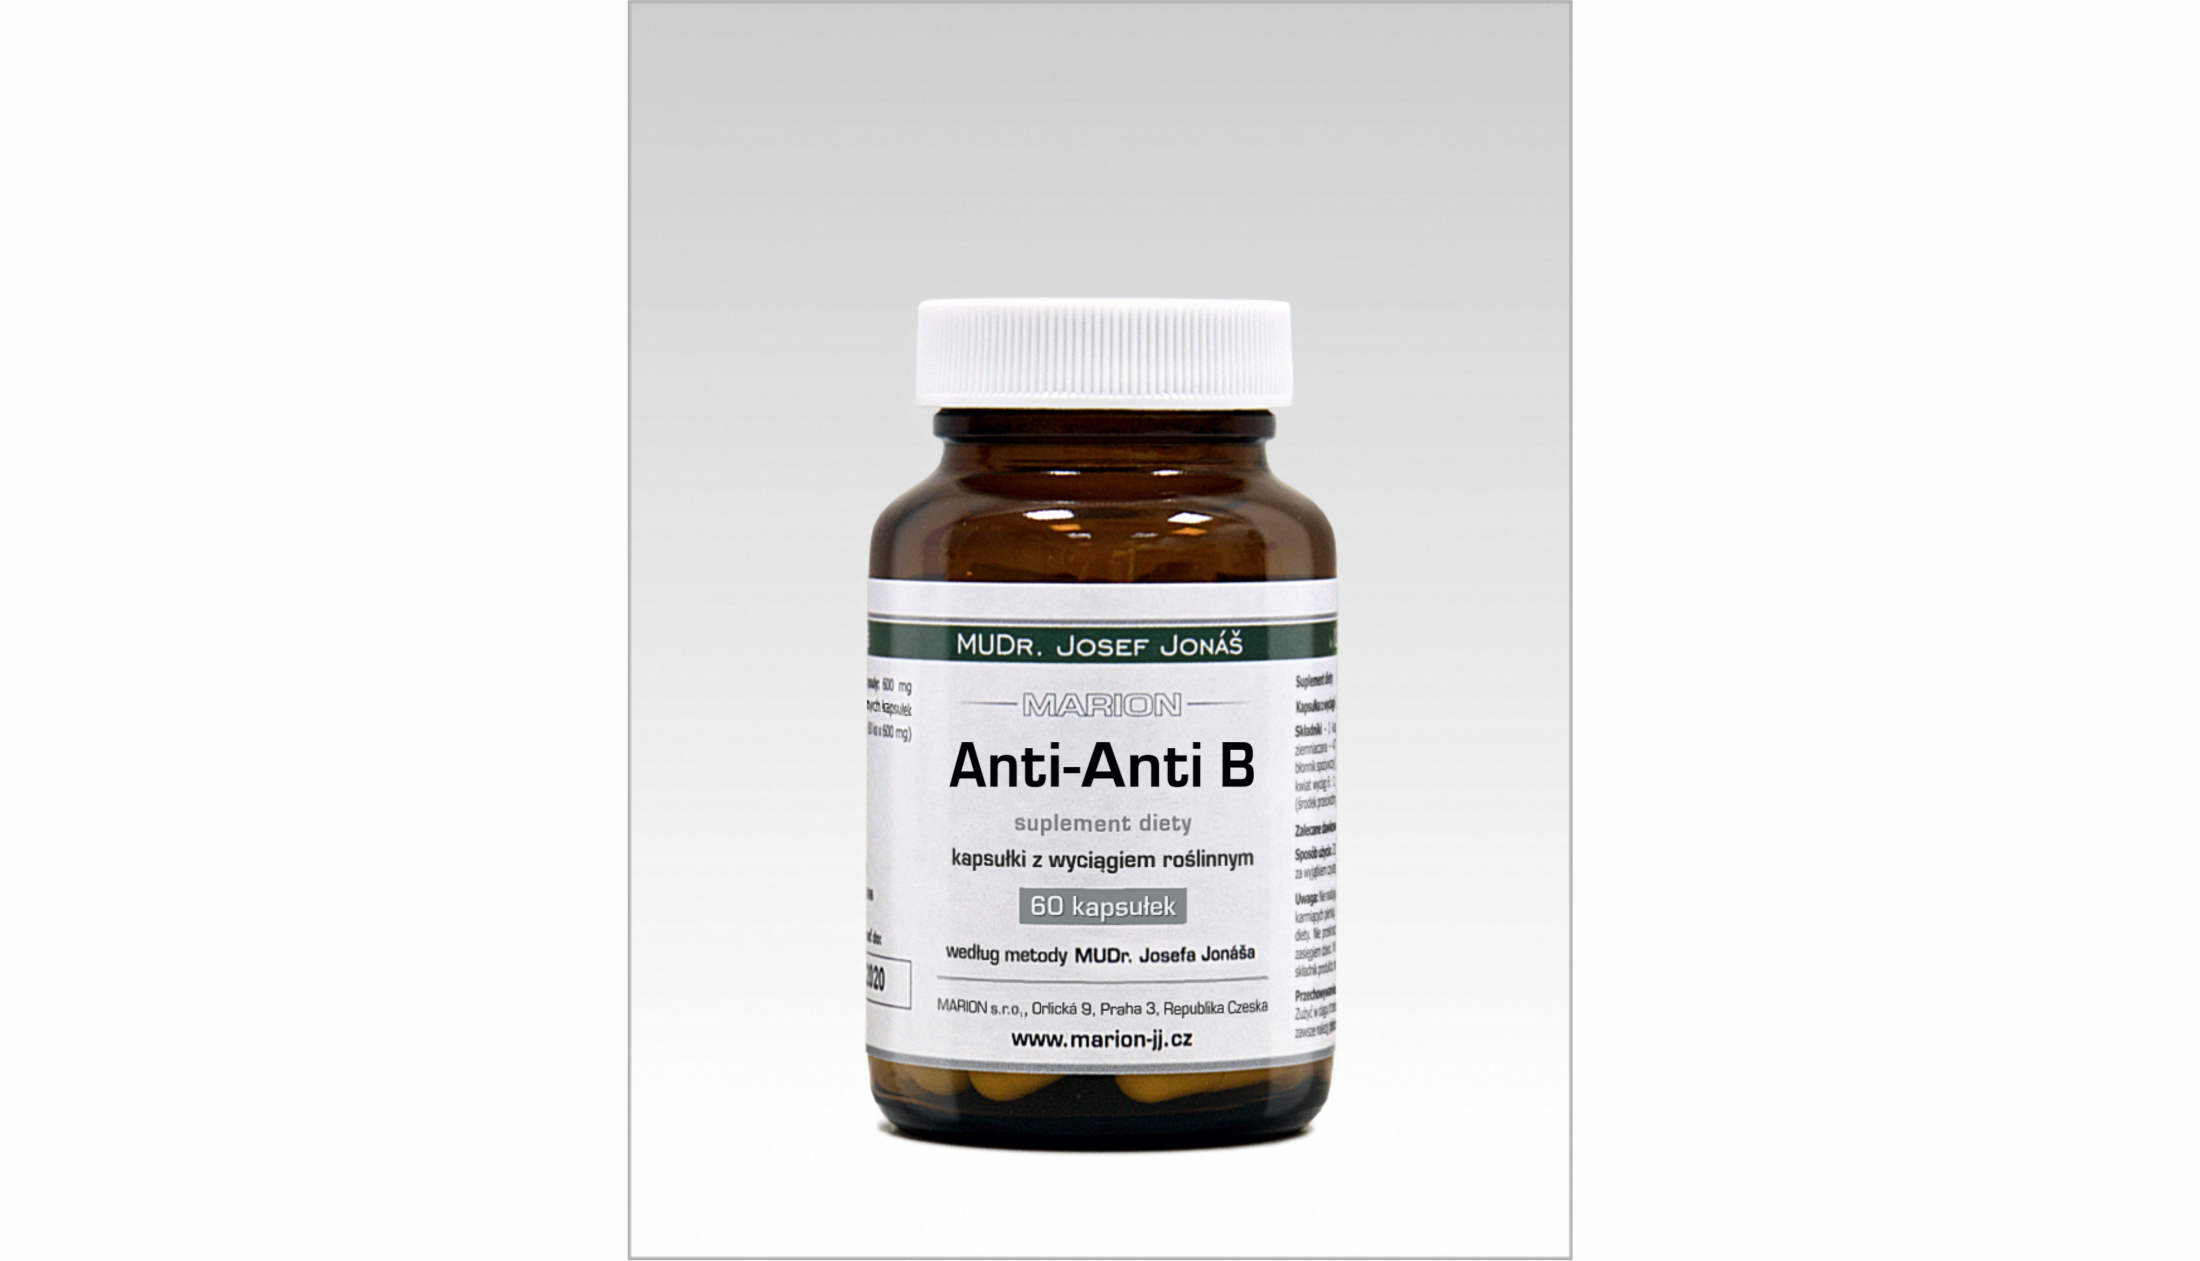 Detoksykacja-Marion-preparat-Anti Anti B